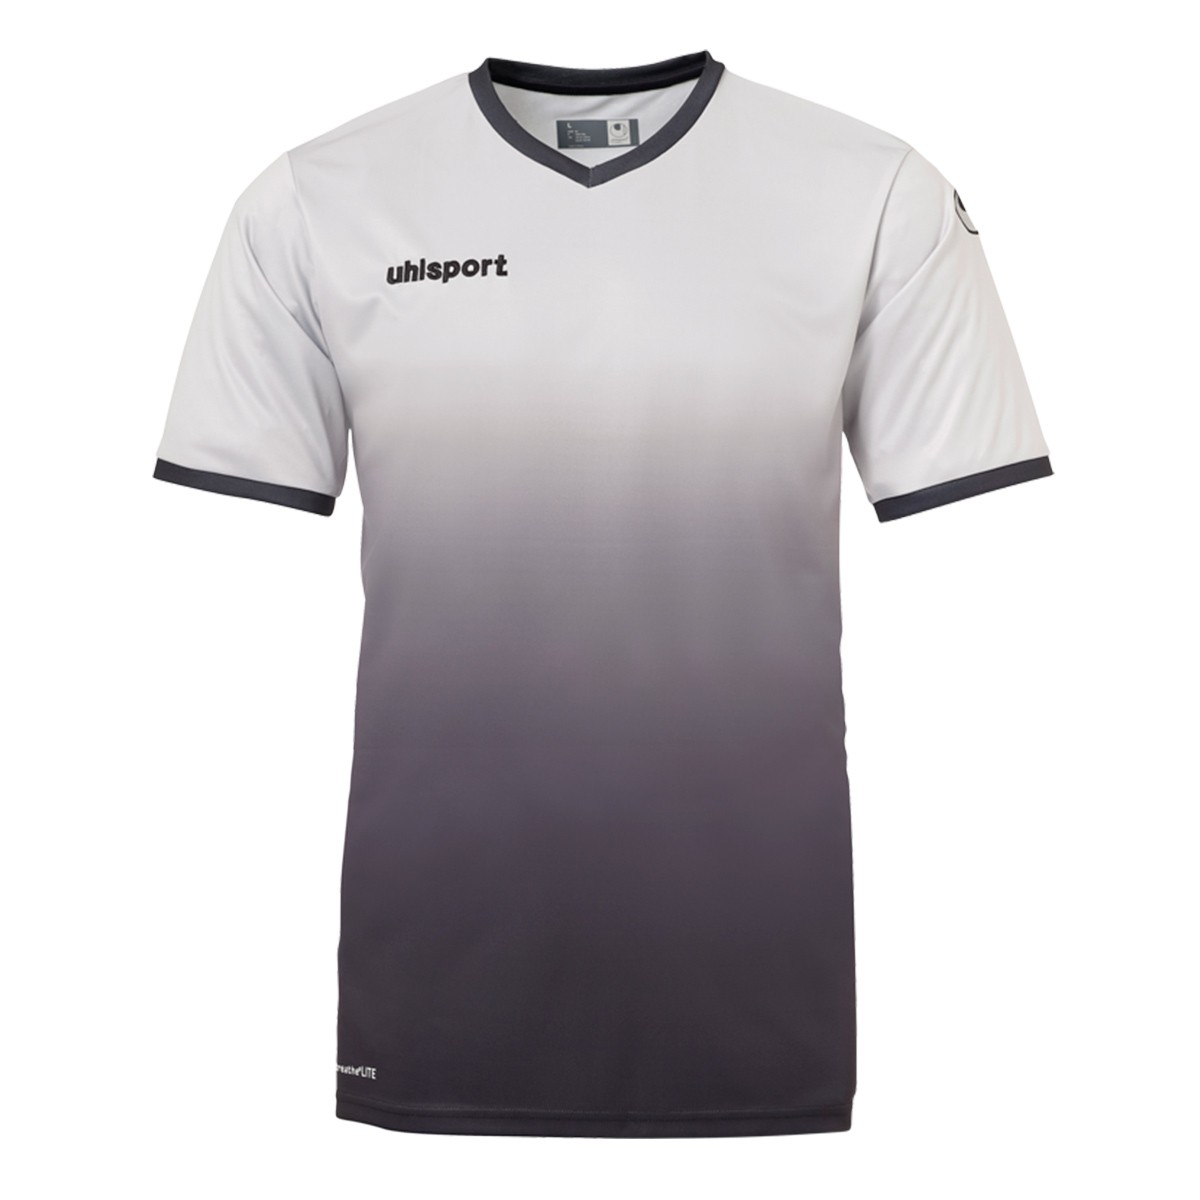 Camiseta Uhlsport Division m/c Gris-Negro - Fútbol Emotion